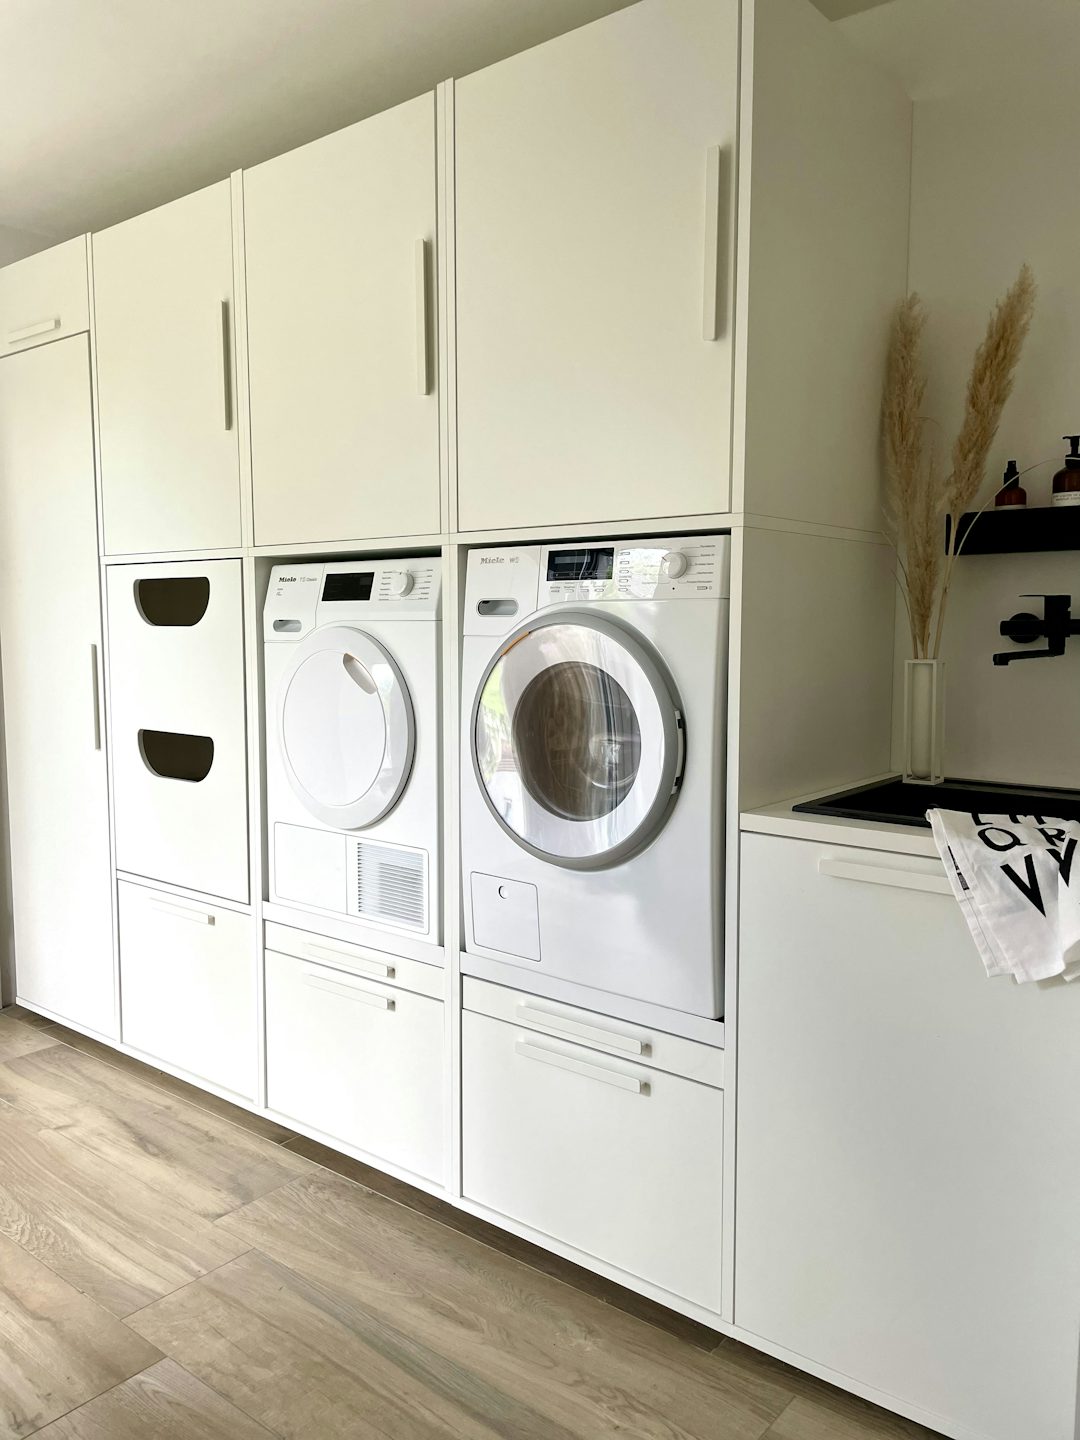 dubbele waskast wit met kast boven wasmachine en droogkast met verschillende opbergkasten bijkeuken verhoger met decoratie inspiratie ideeen